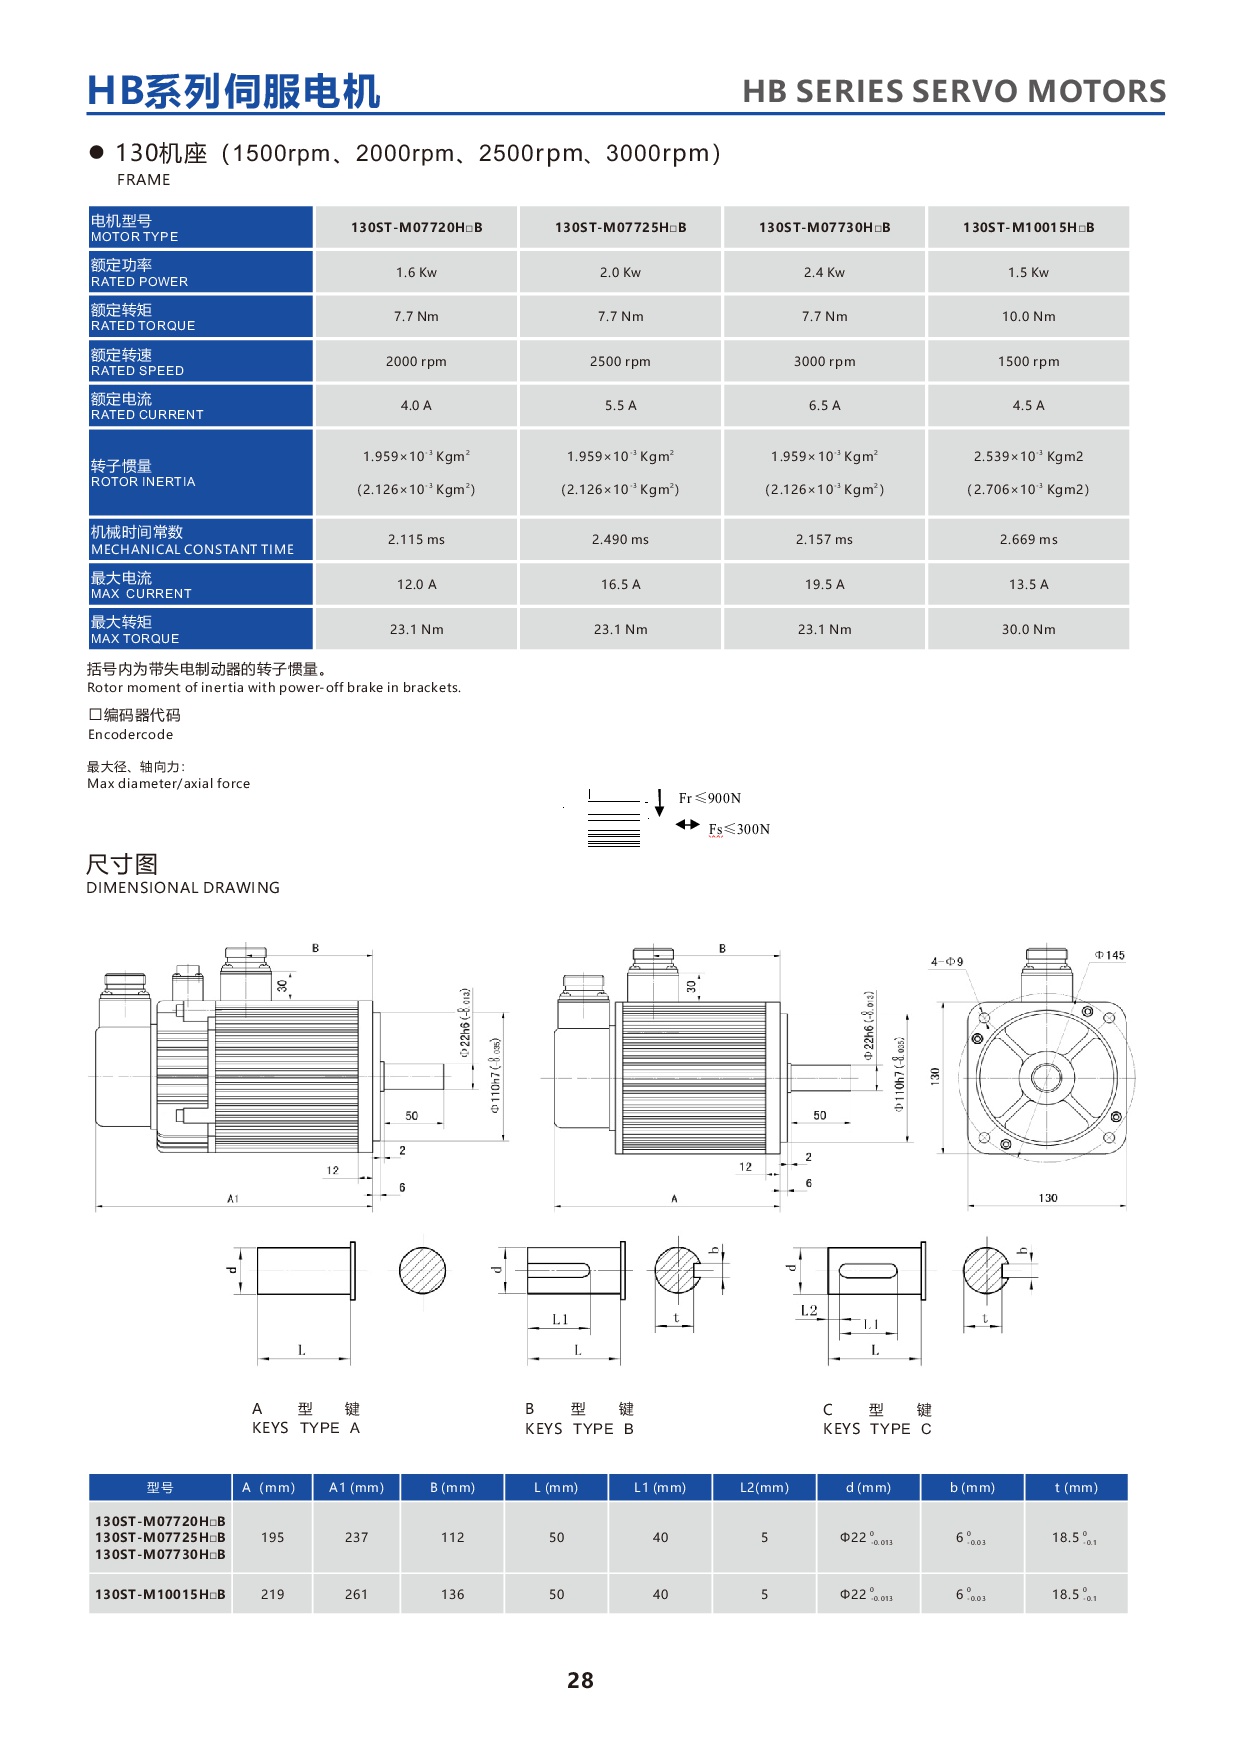 产品特性-26-HBseries130STservomotor